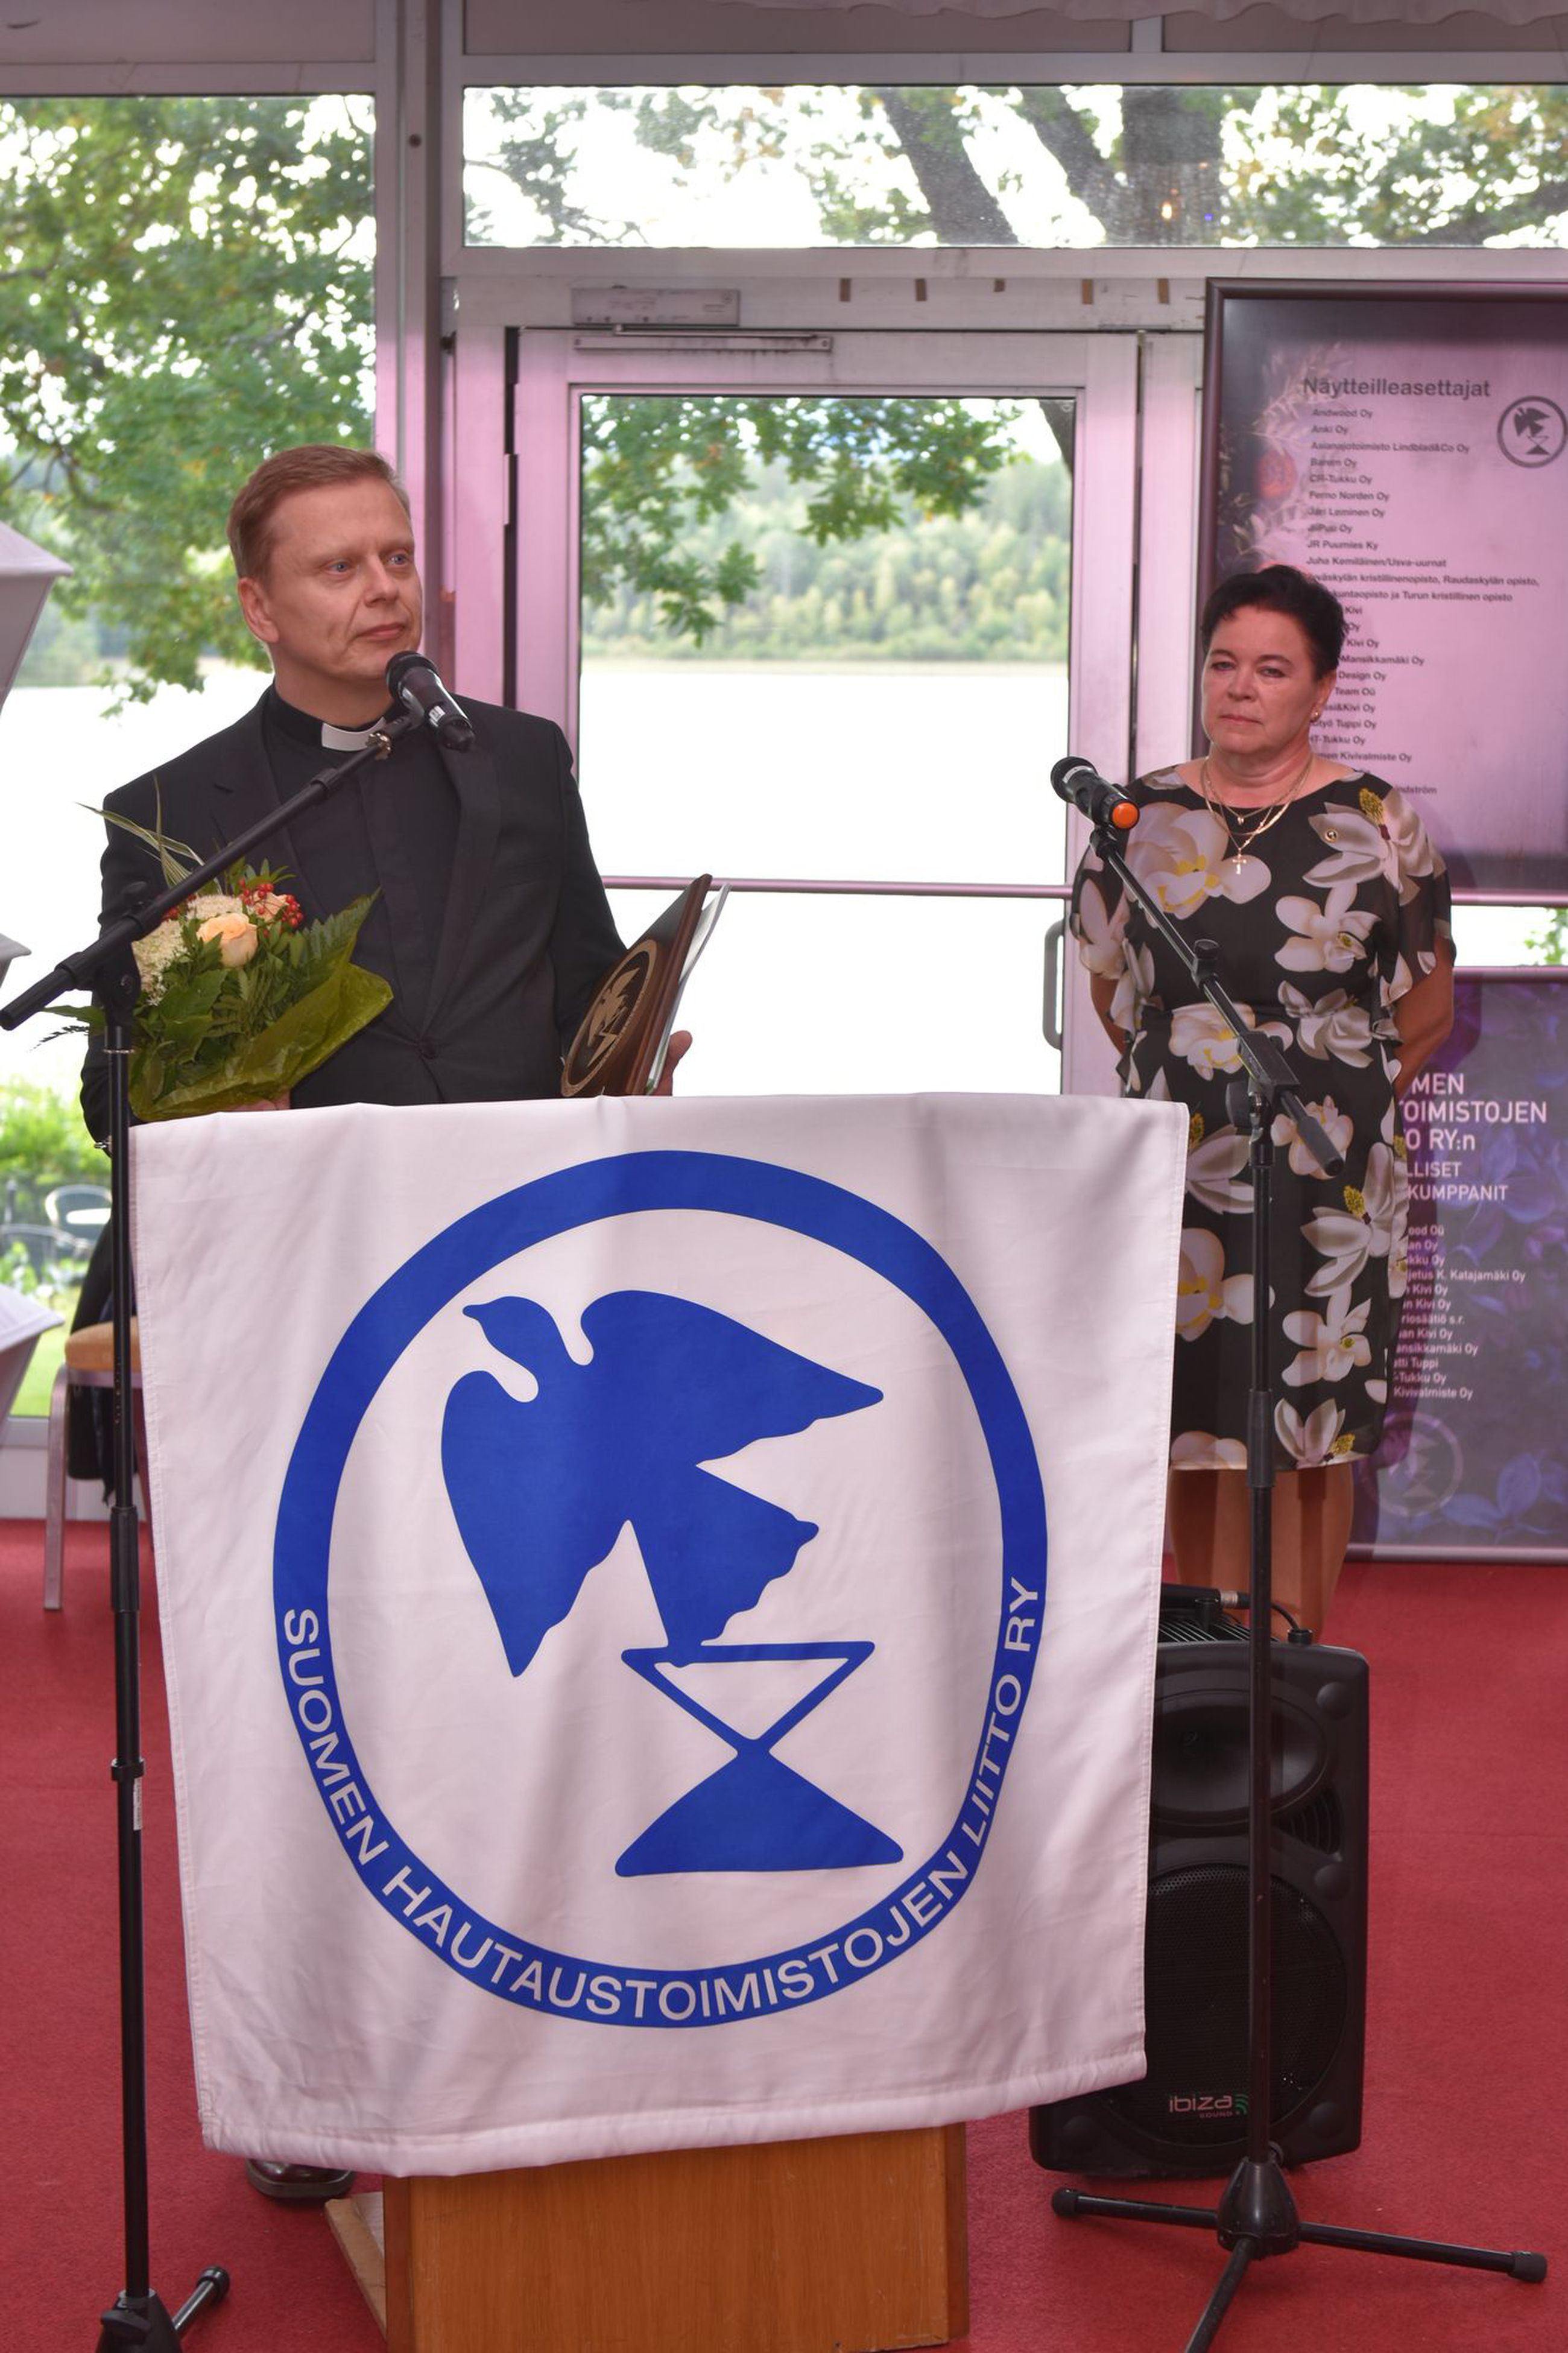 Hautaustoimistojen liitto valitsi Kempeleen Vuoden seurakunnaksi –  